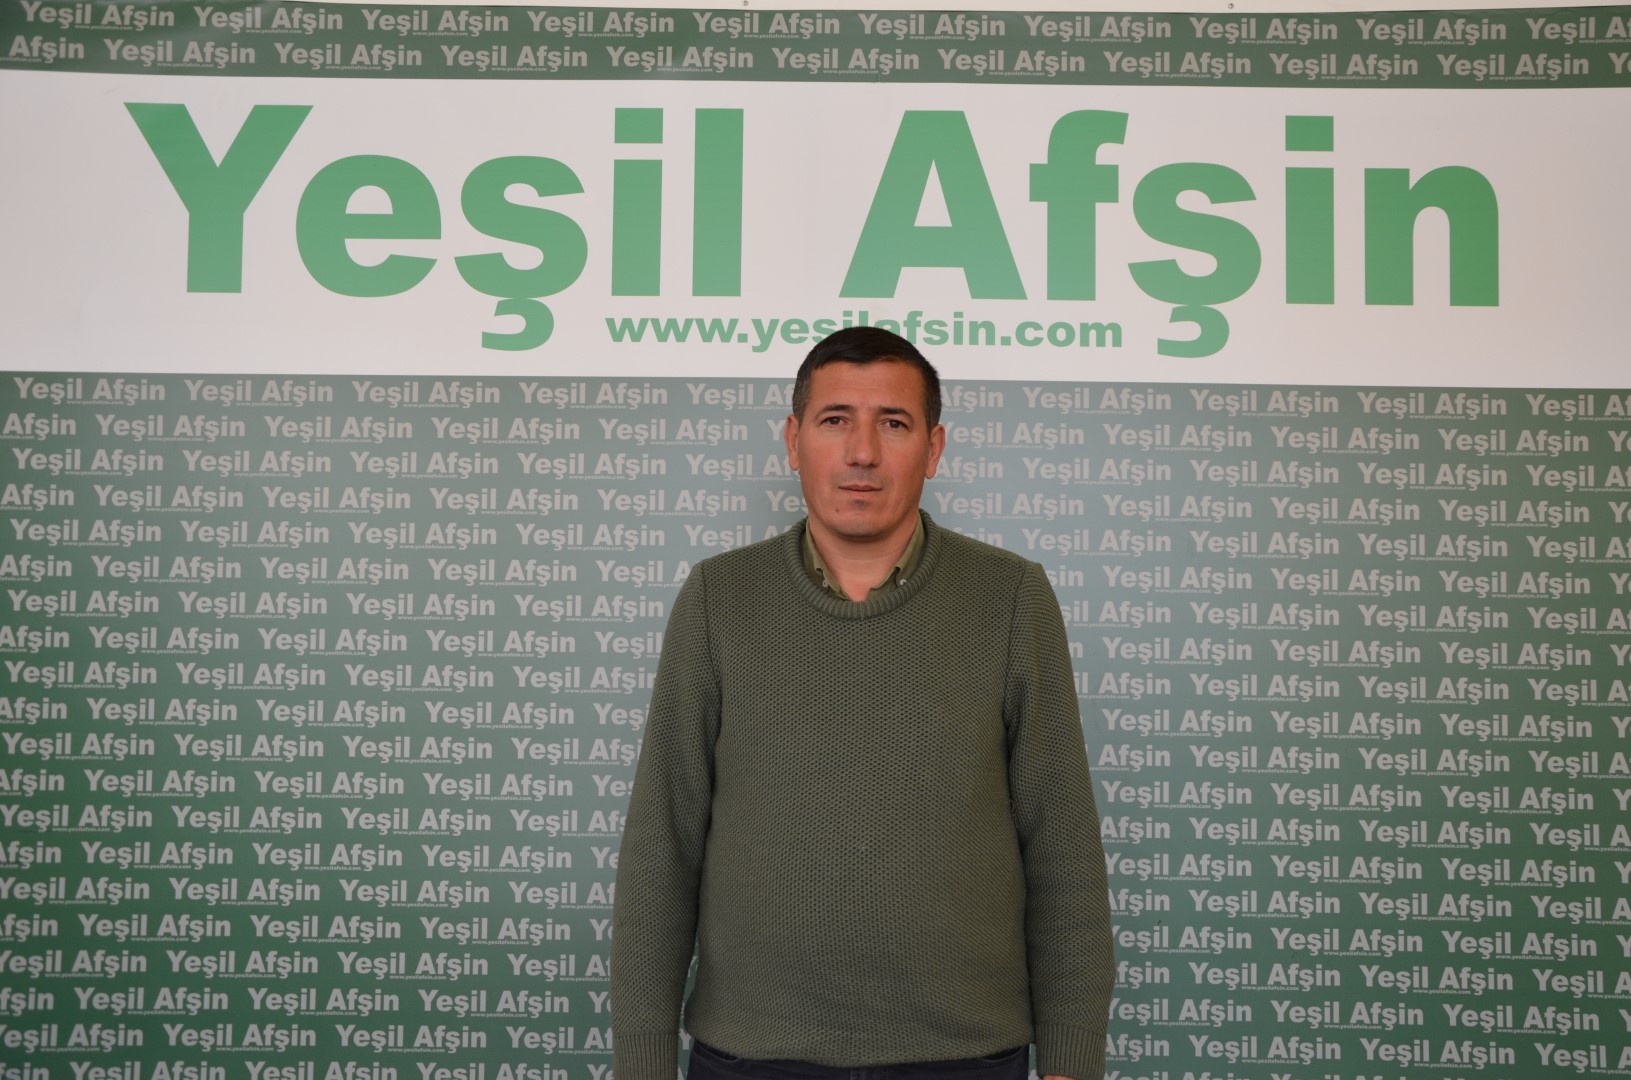 Mehmet Ali Akpınar (1) (Large)